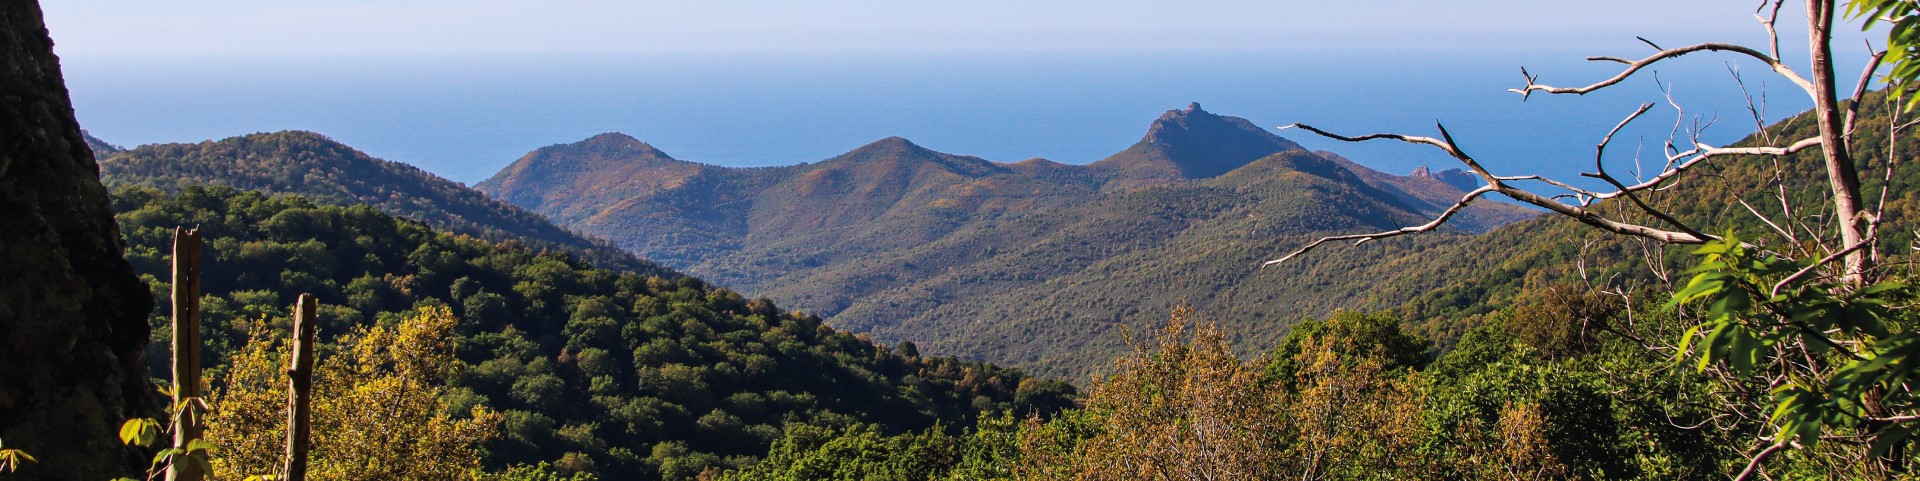 Das Schutzgebiet der Monts de l’Edough in Algerien, eine bergige grüne Landschaft am Meer.